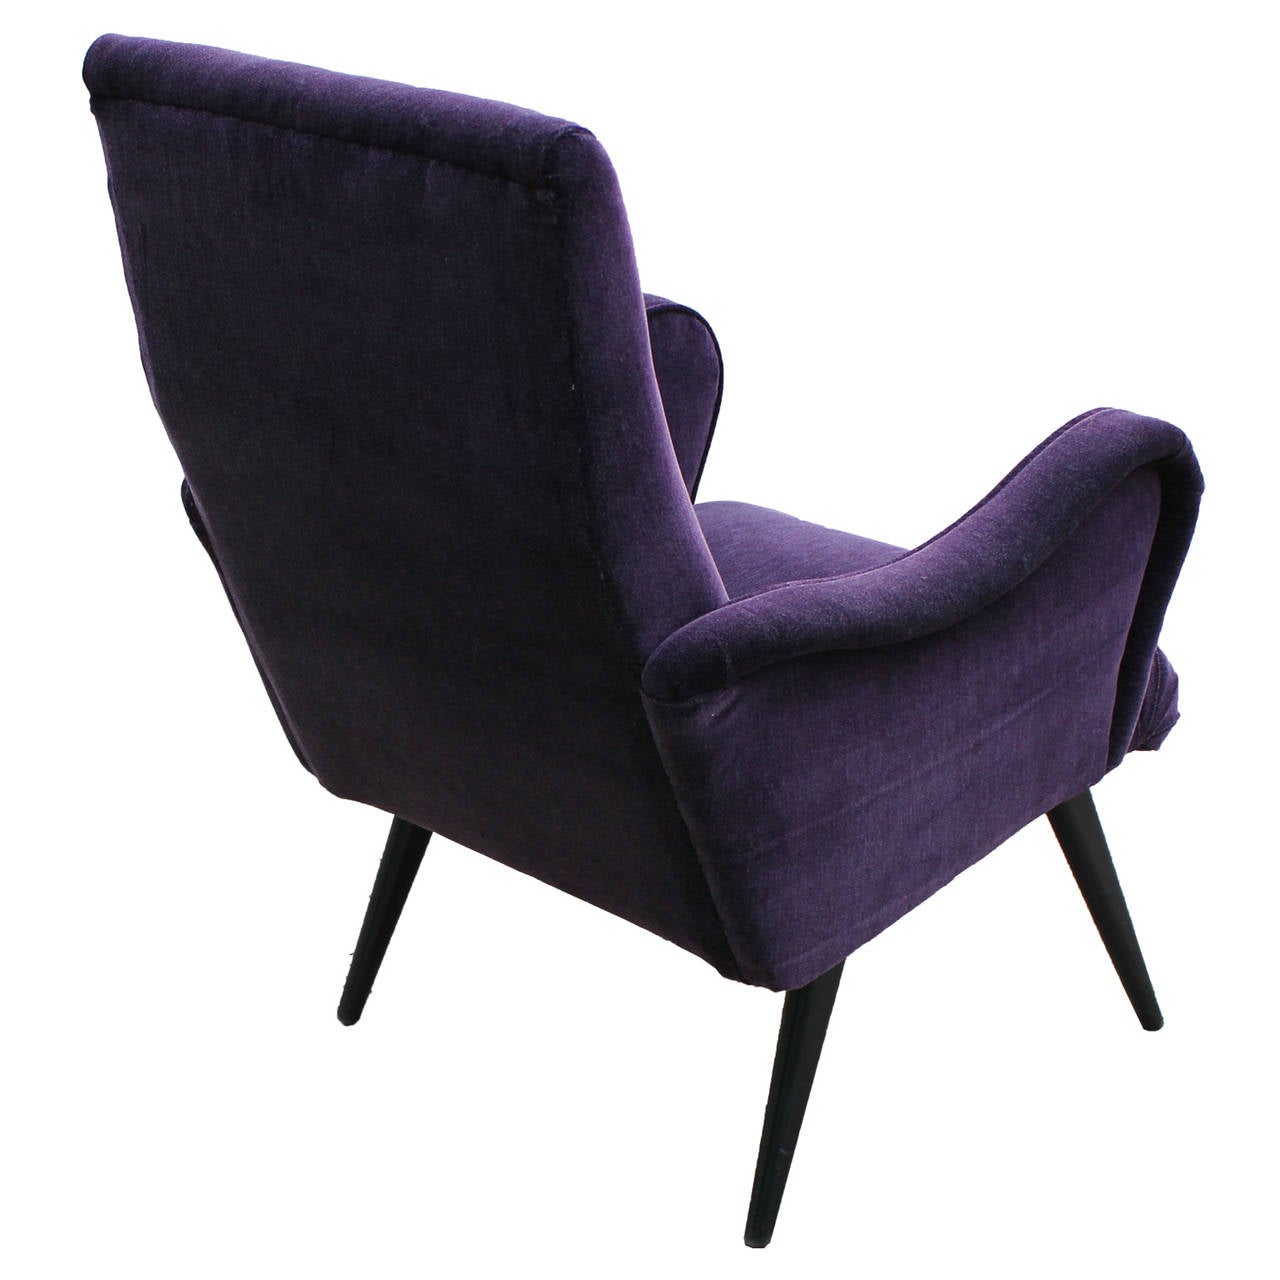 Mid-20th Century Opulent Sculptural Italian Purple Armchair